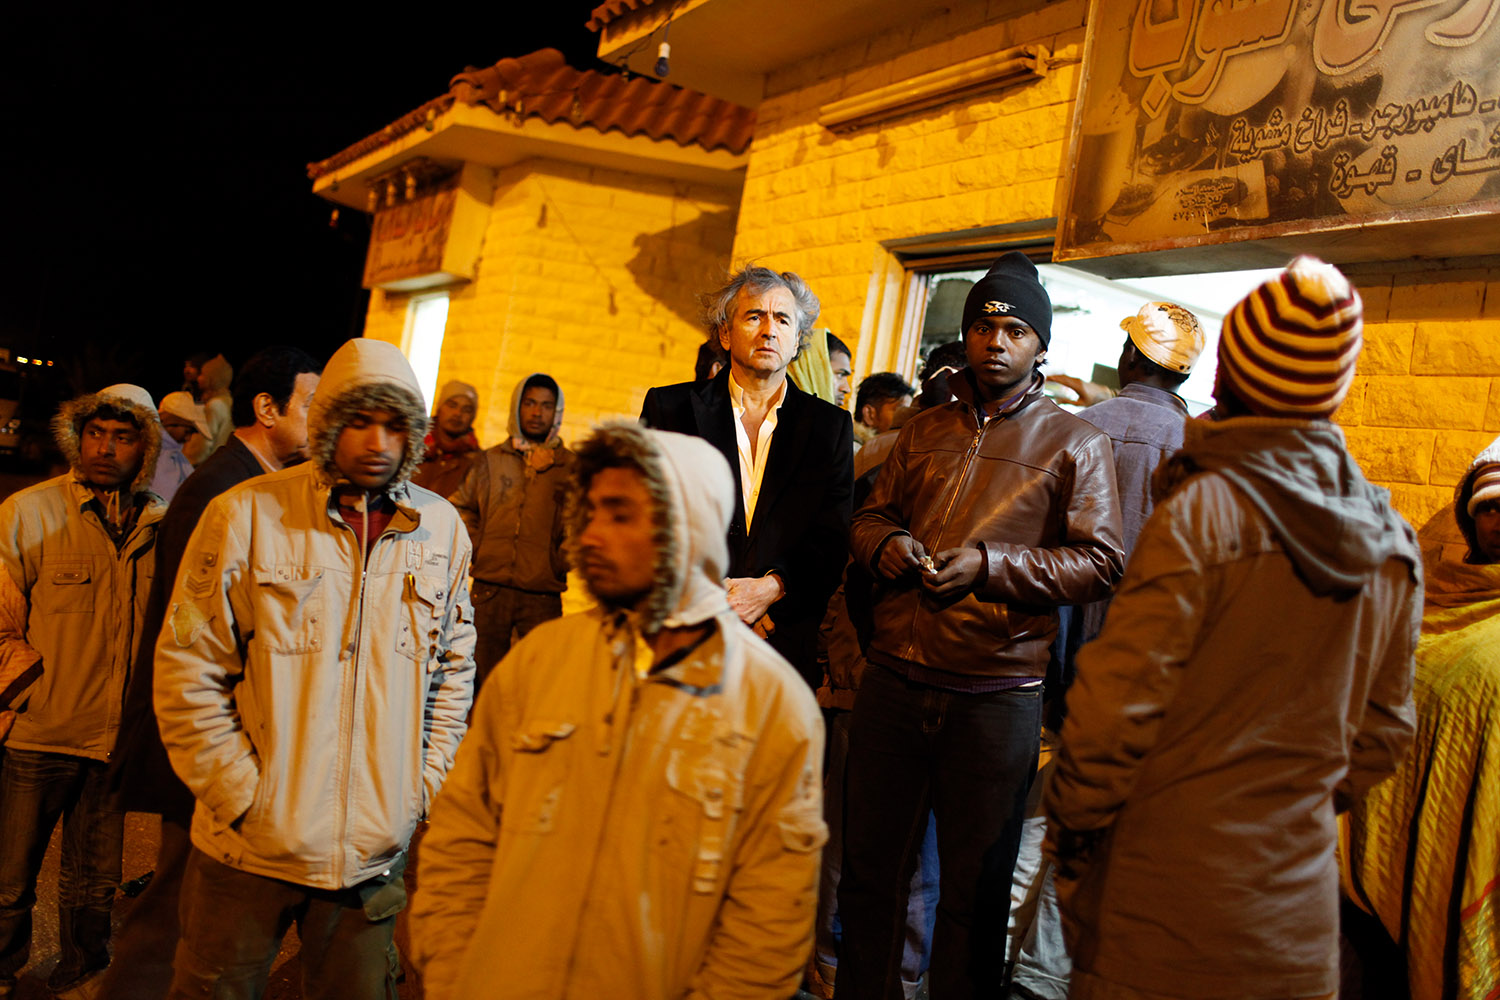 Bernard-Henri Lévy dans la ville de Salloum, en Egypte, la nuit, il est entouré par des hommes qui portent des bonnets et des capuches.